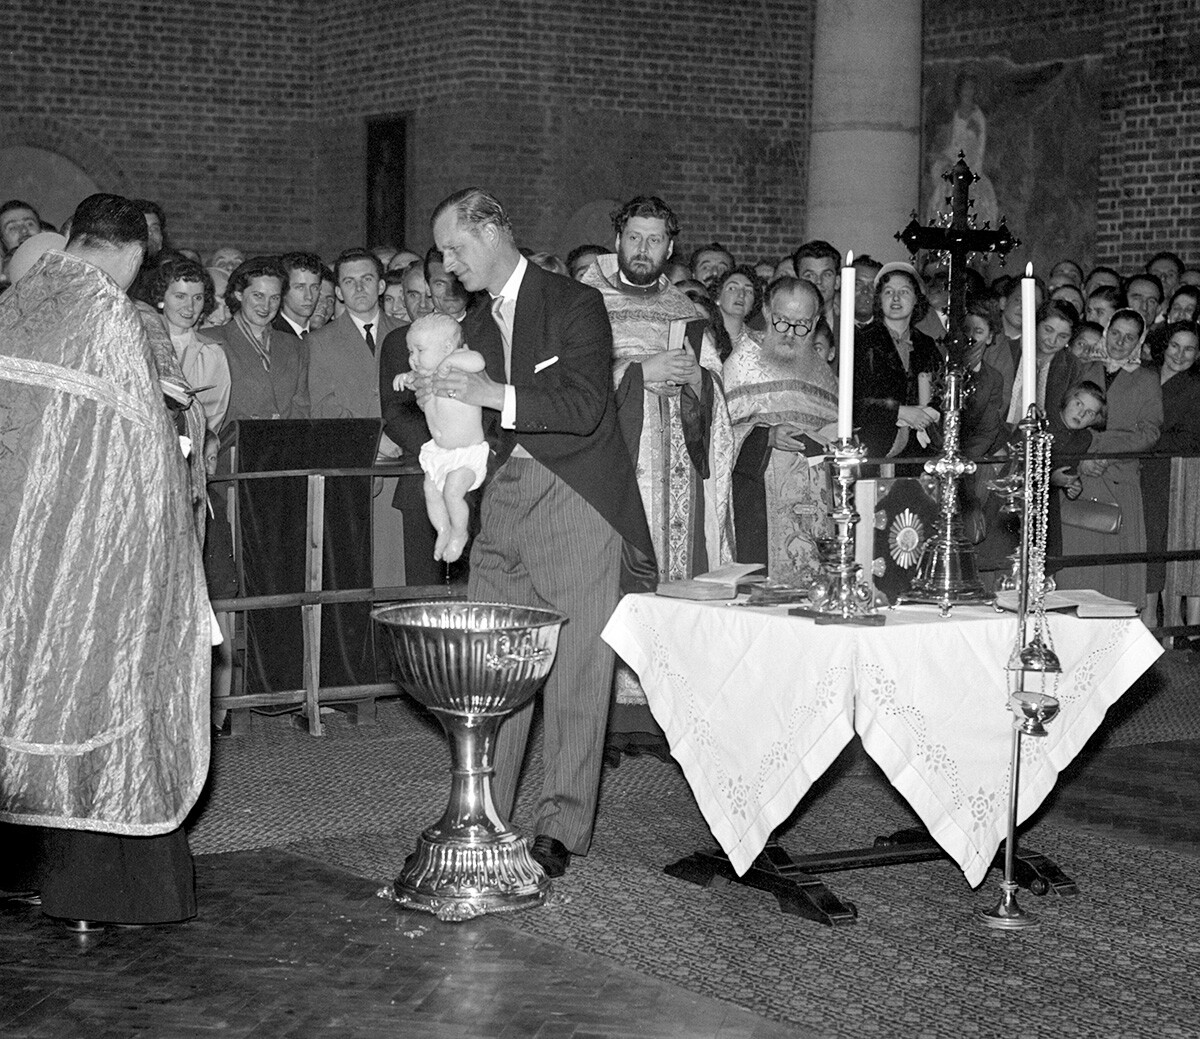 Херцогът на Единбург, който е кръстник на детето, изважда малката принцеса Мария от купела след кръщенето ѝ в Сръбската православна църква. Момиченцето е дъщеря на племенницата на херцога принцеса Кристина Хесенска и принц Андрей Югославски.